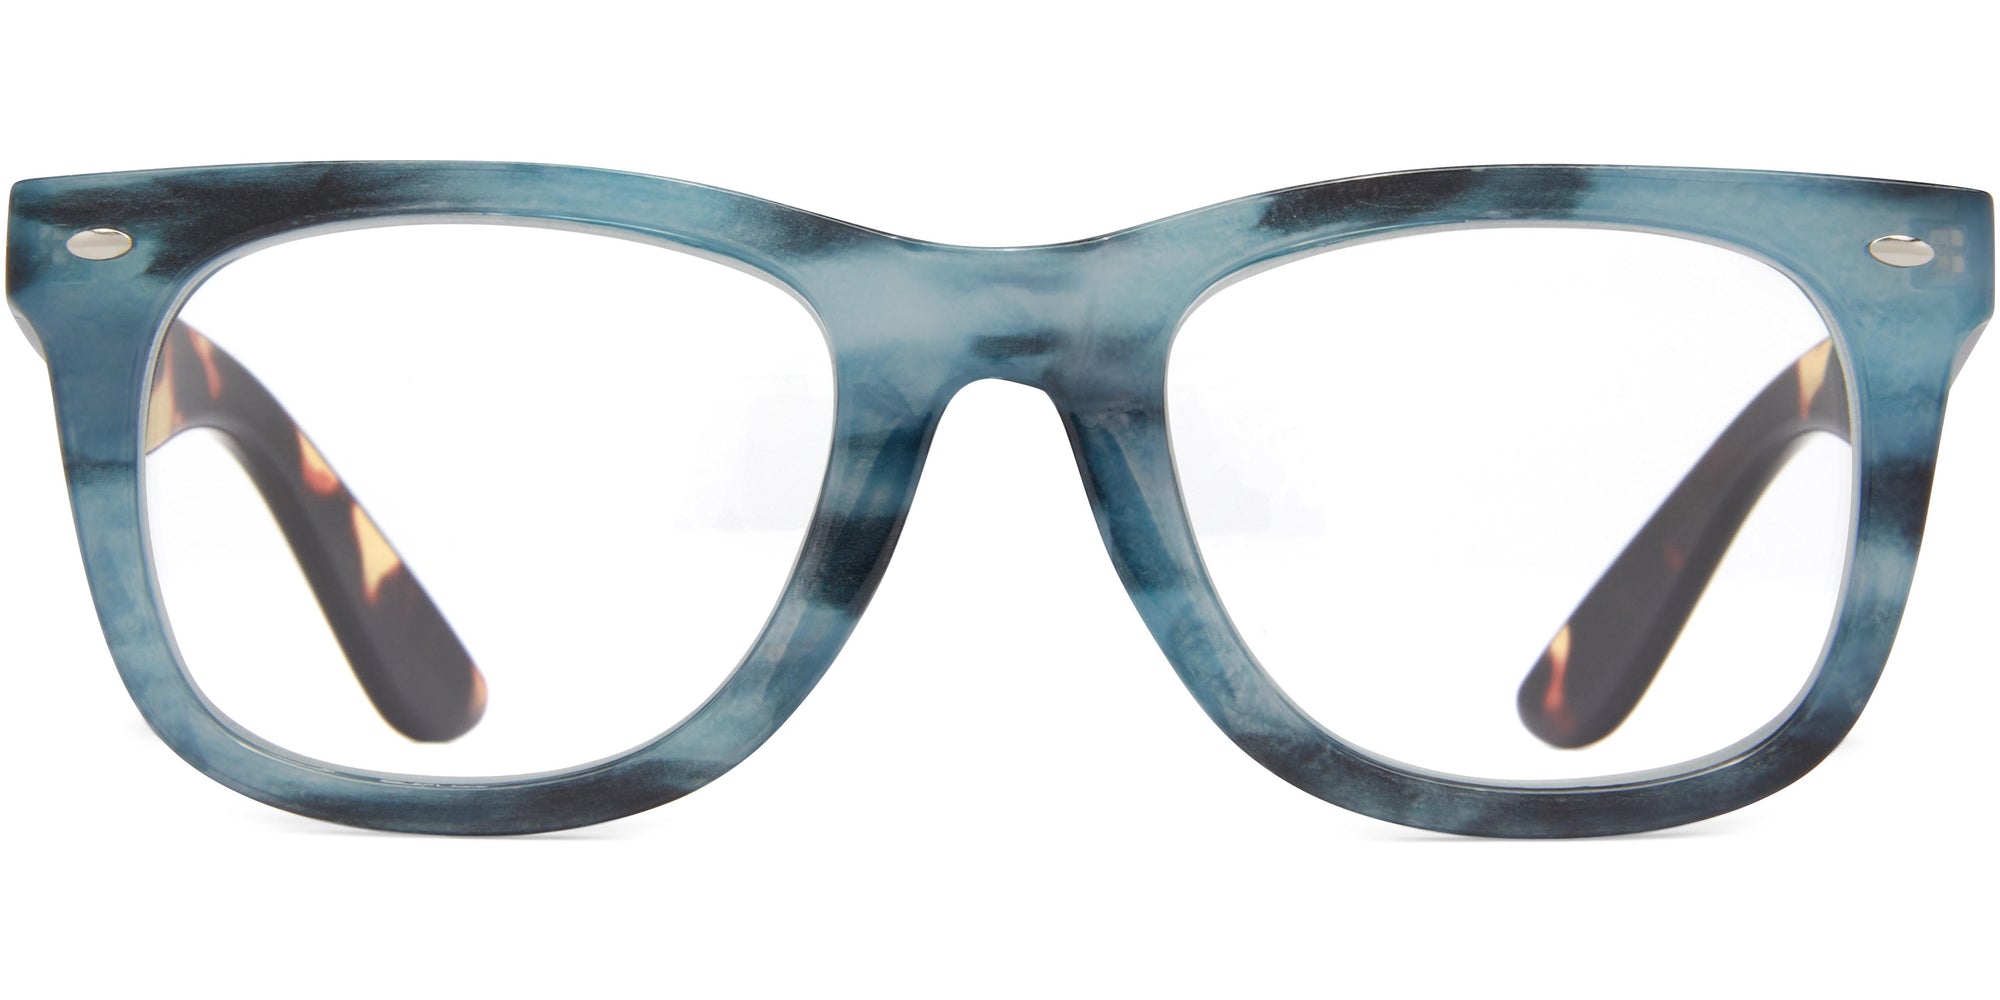 Millie - Blue / 1.25 - Reading Glasses